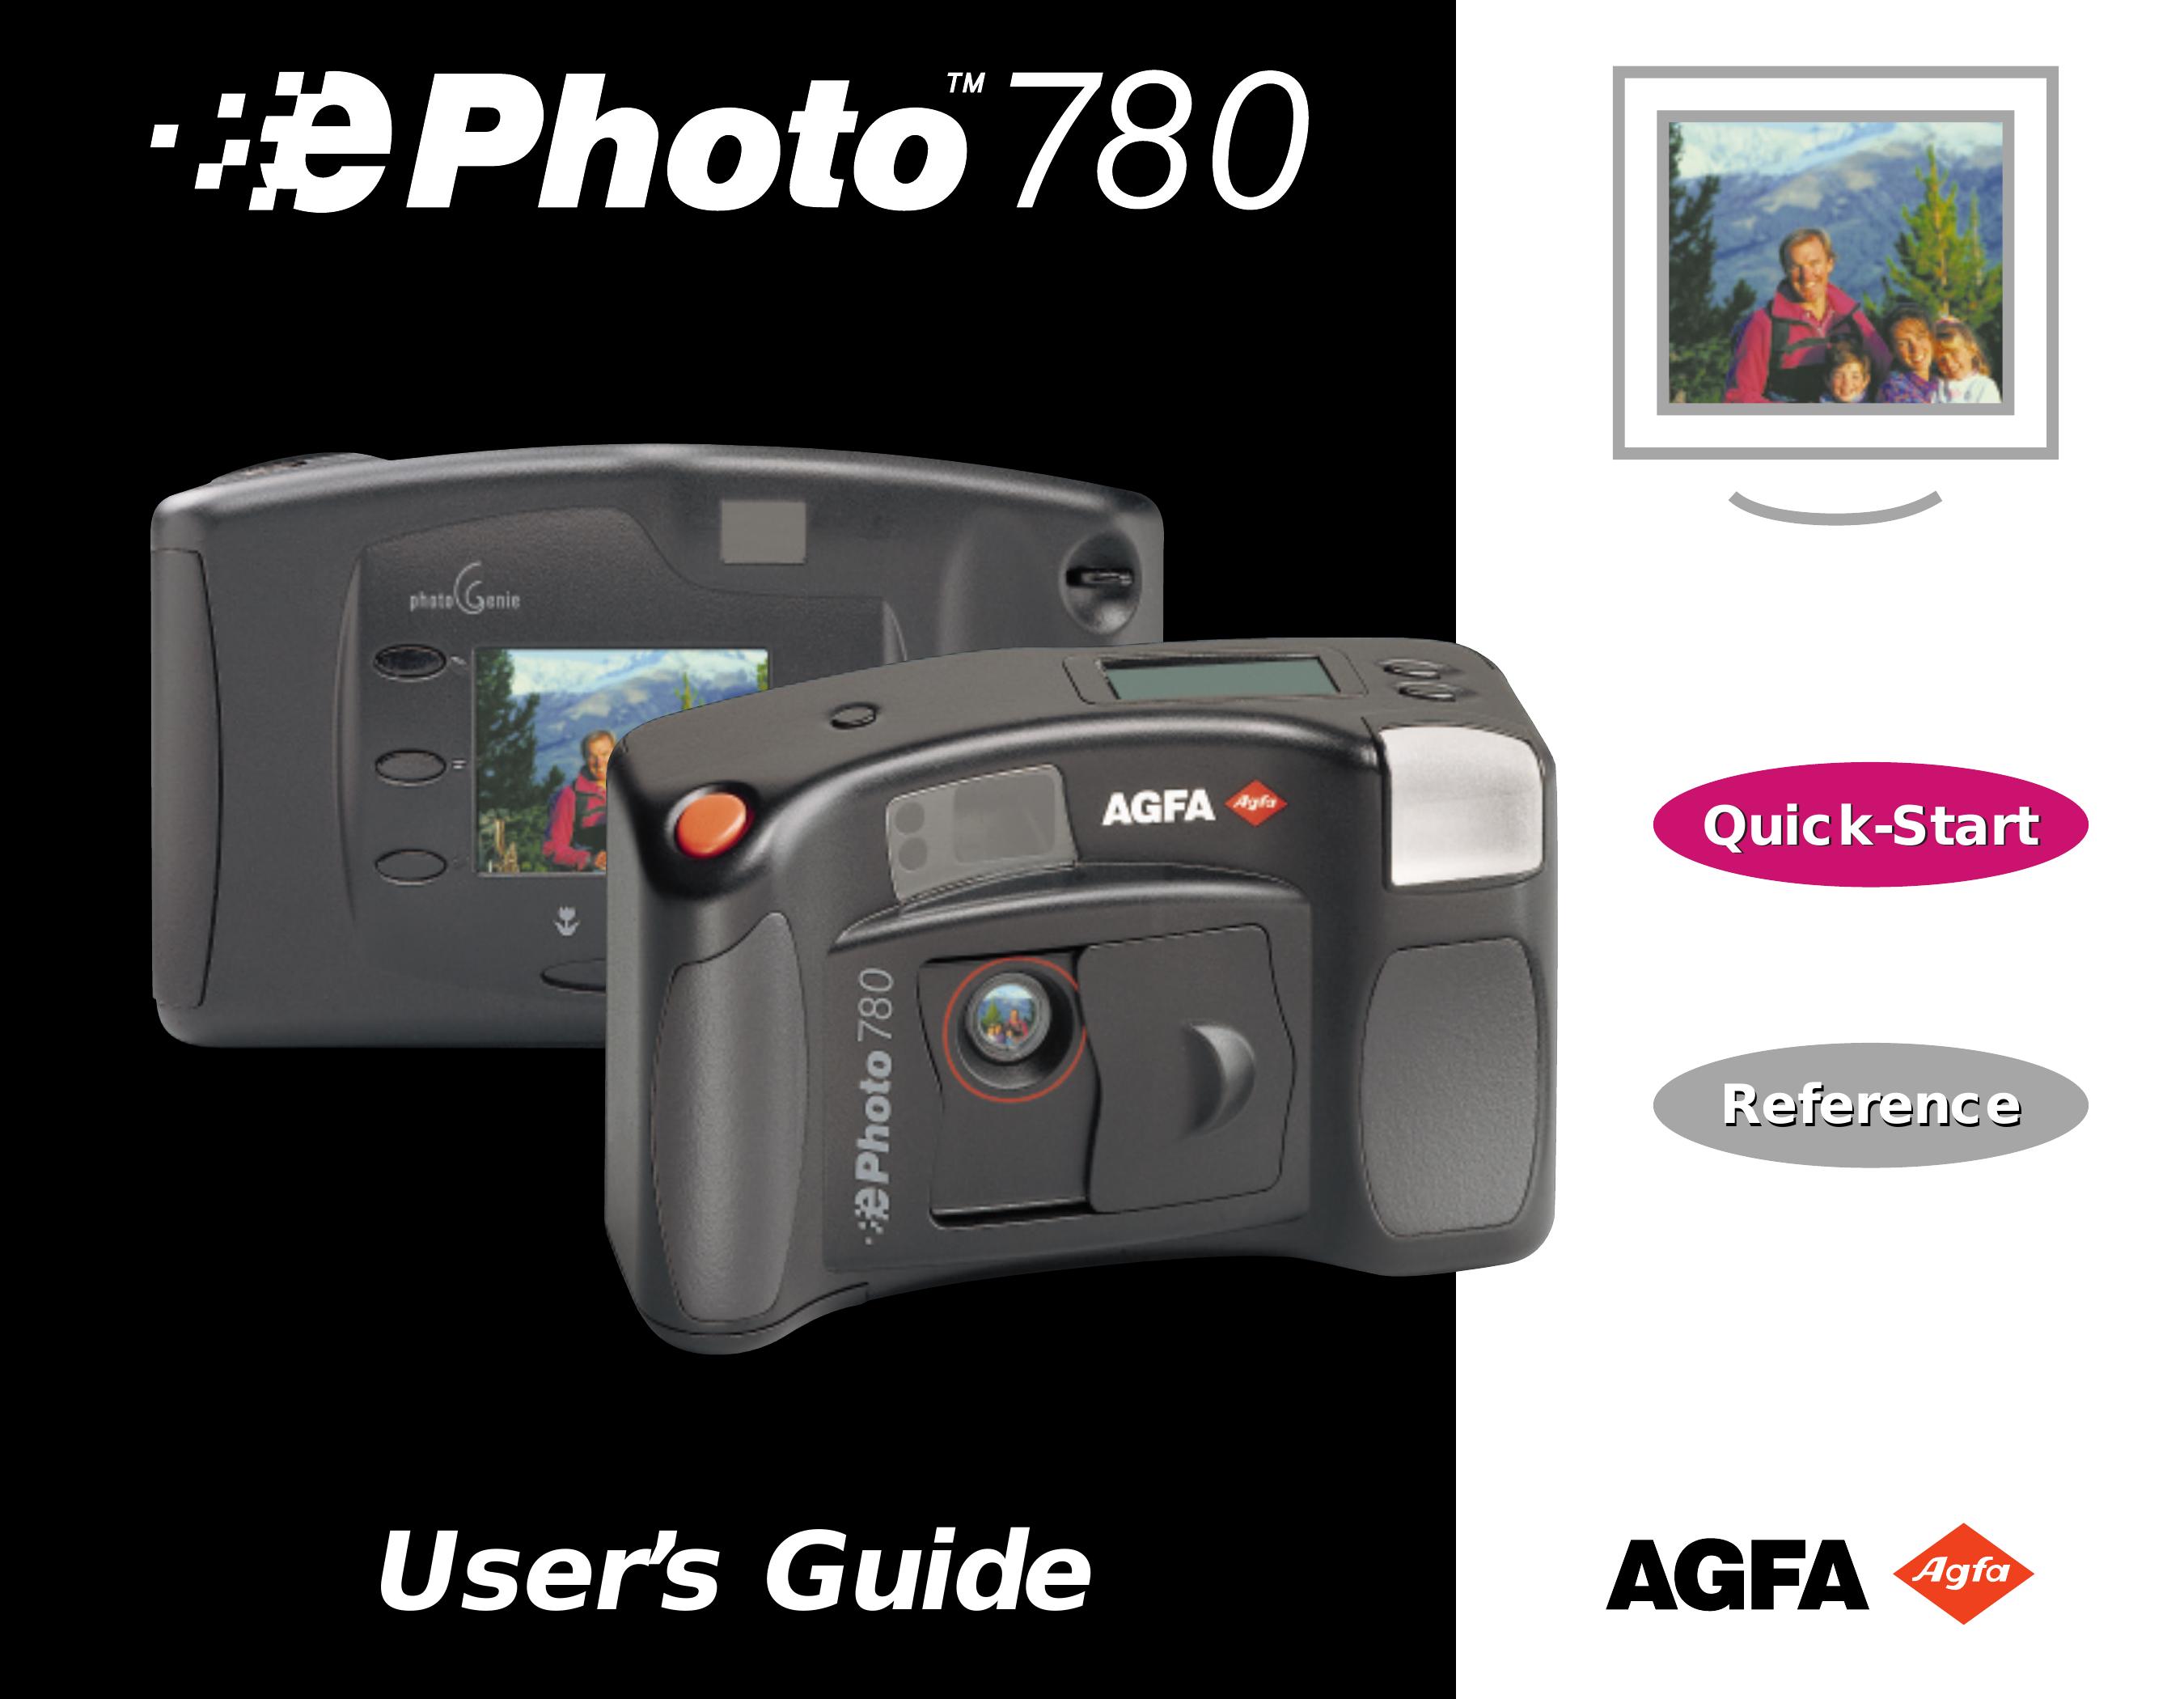 AGFA 780 Digital Camera User Manual